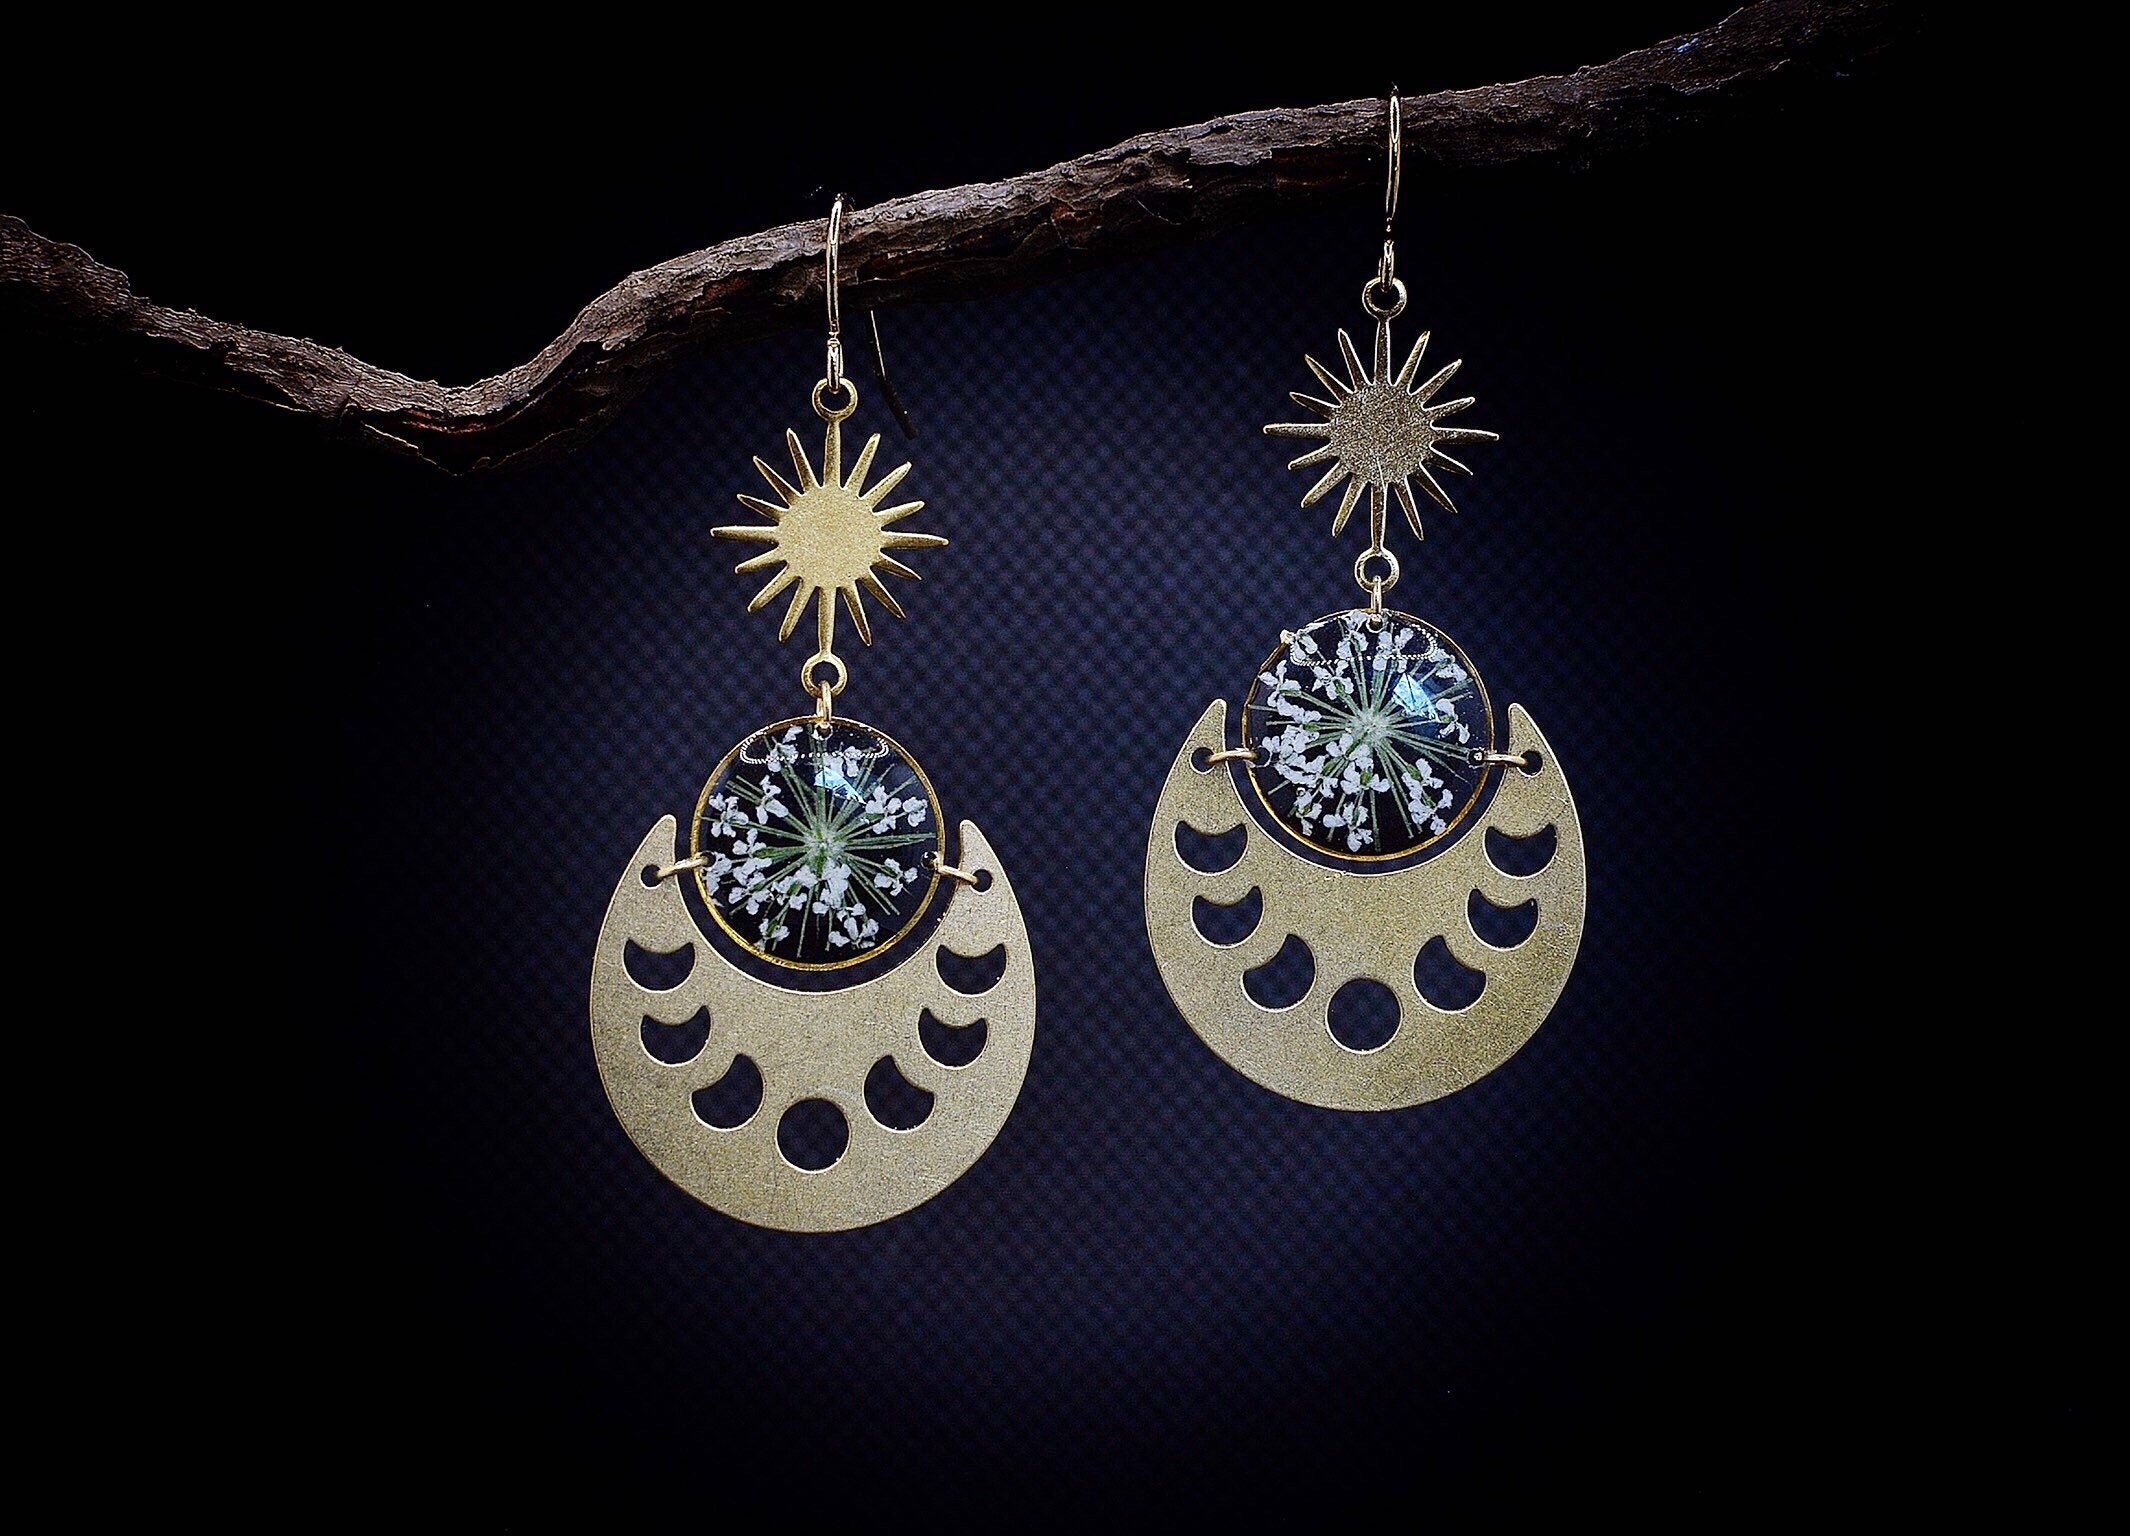 Moon Phase Earrings/Moon Dangle Earrings/Gift For Her/Pressed Flower Jewelry/Moon Jewelry/Celestial Earrings/Boho Jewelry/